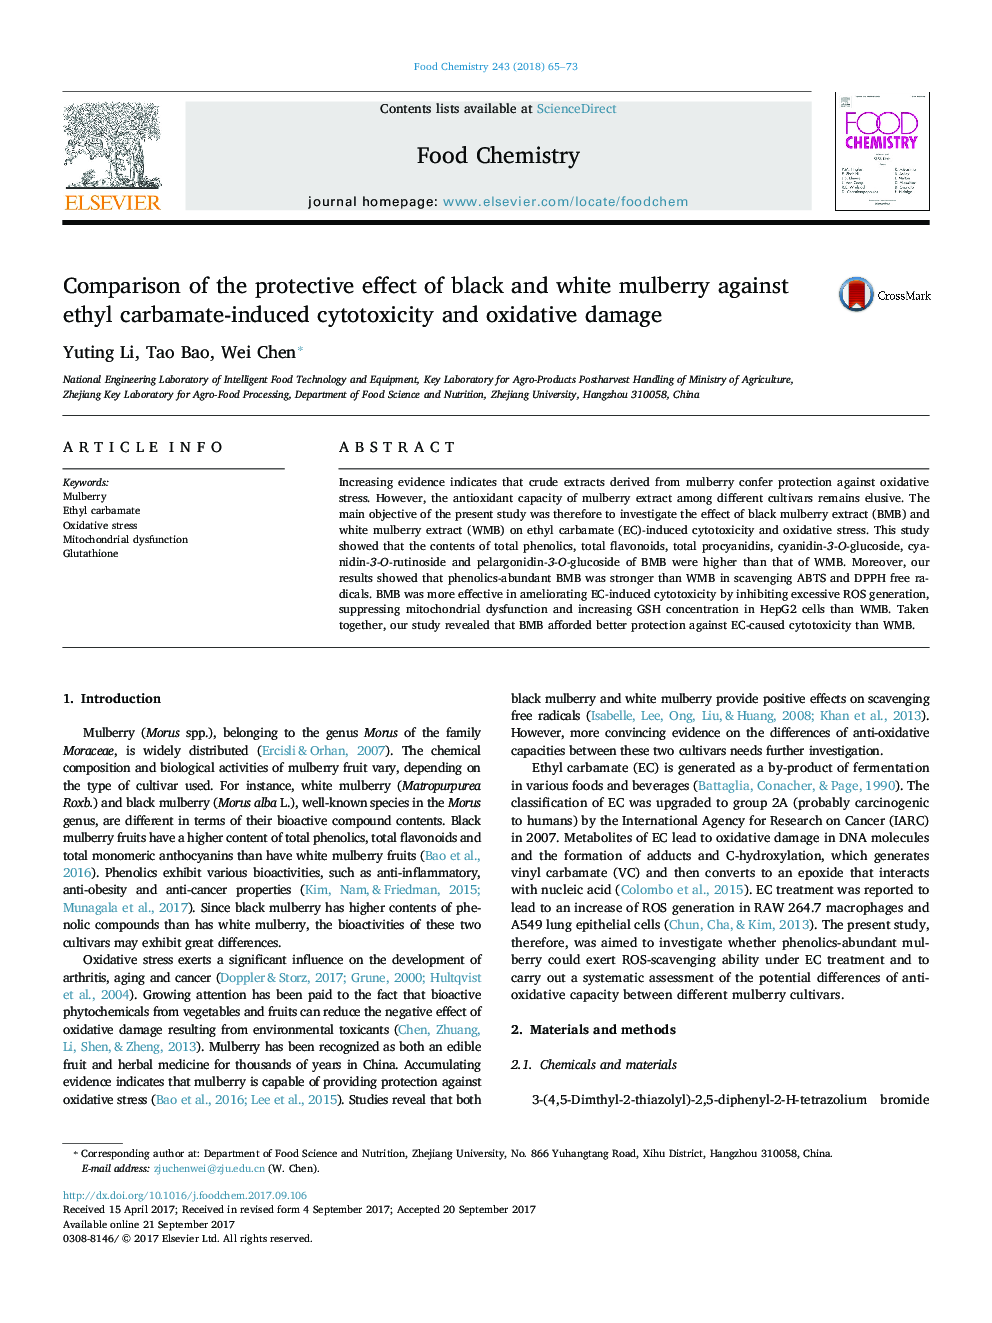 مقایسه اثر حفاظتی زرده تخم سیاه و سفید در برابر سیتوتوکسیستی ناشی از اتیل کربامات و آسیب اکسیداتیو